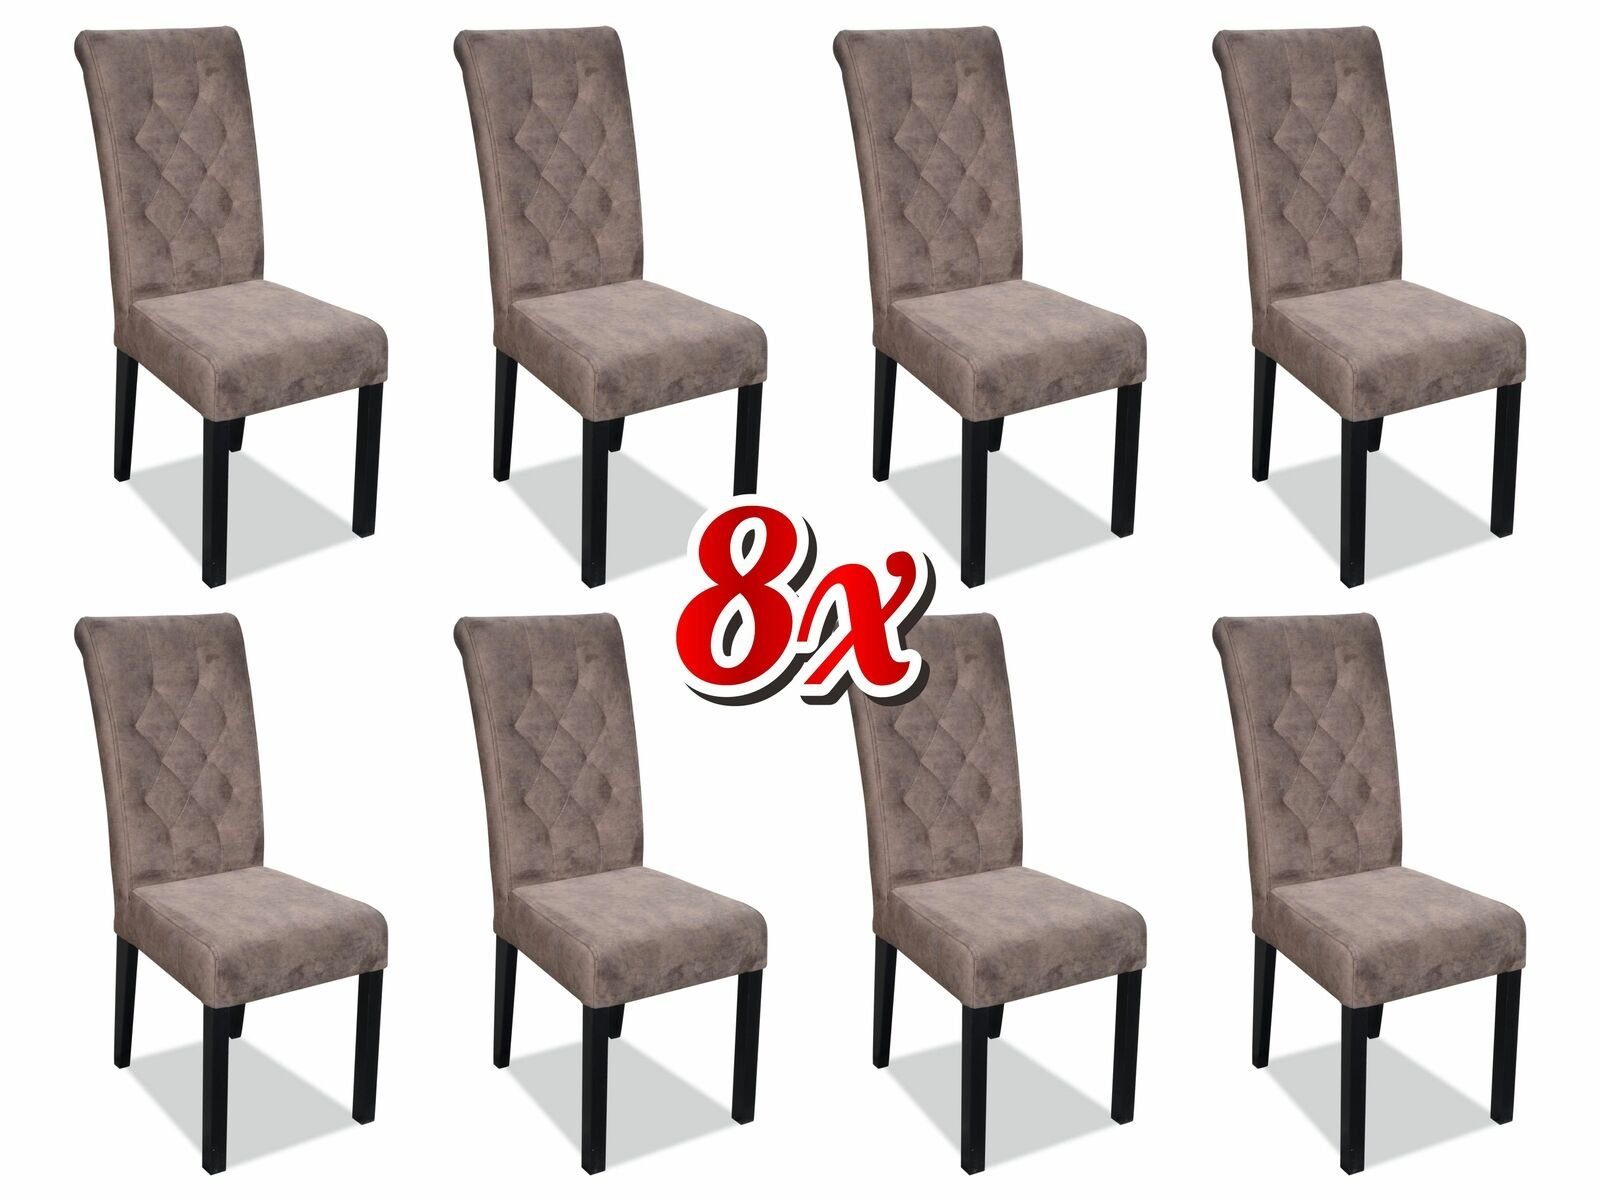 JVmoebel Stuhl, Chesterfield 8x Sessel Design Polster Stühle Stuhl Klassische Lehn Textil Holz Braun